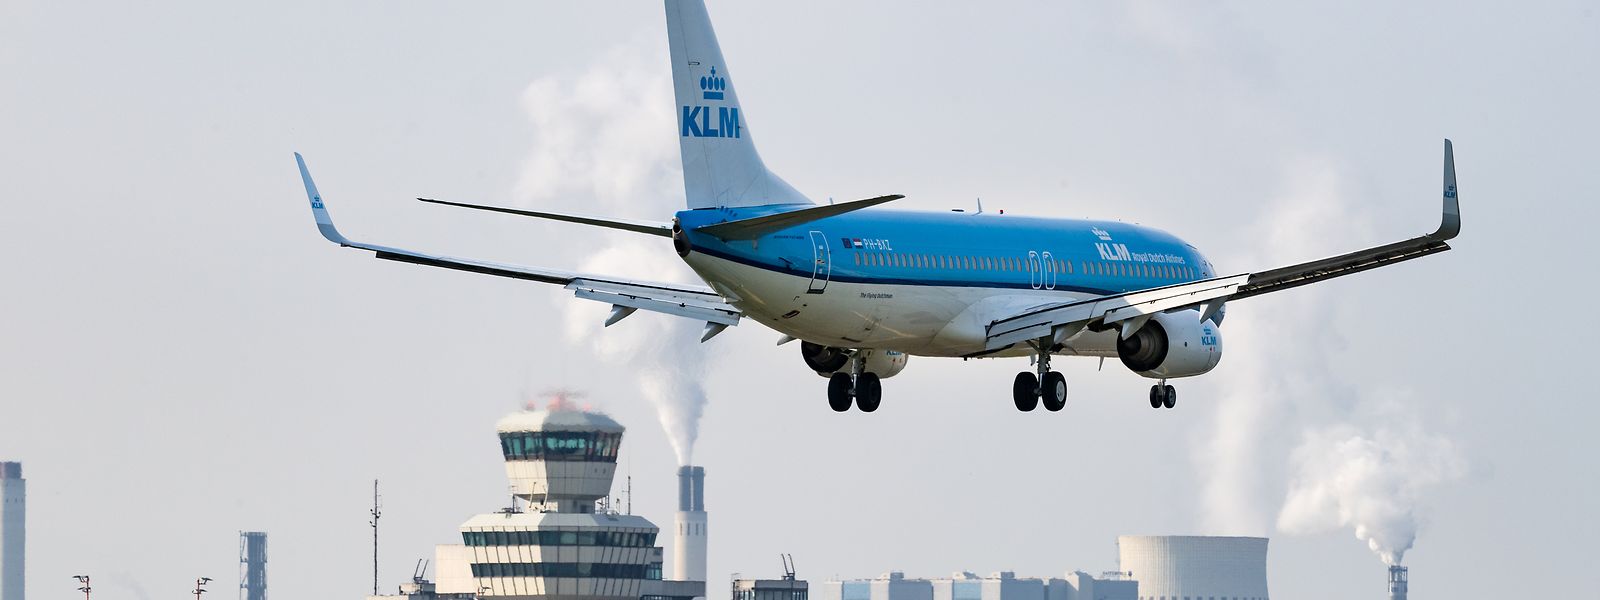 Ein Flugzeug der Fluggesellschaft KLM landet auf dem Flughafen Tegel.